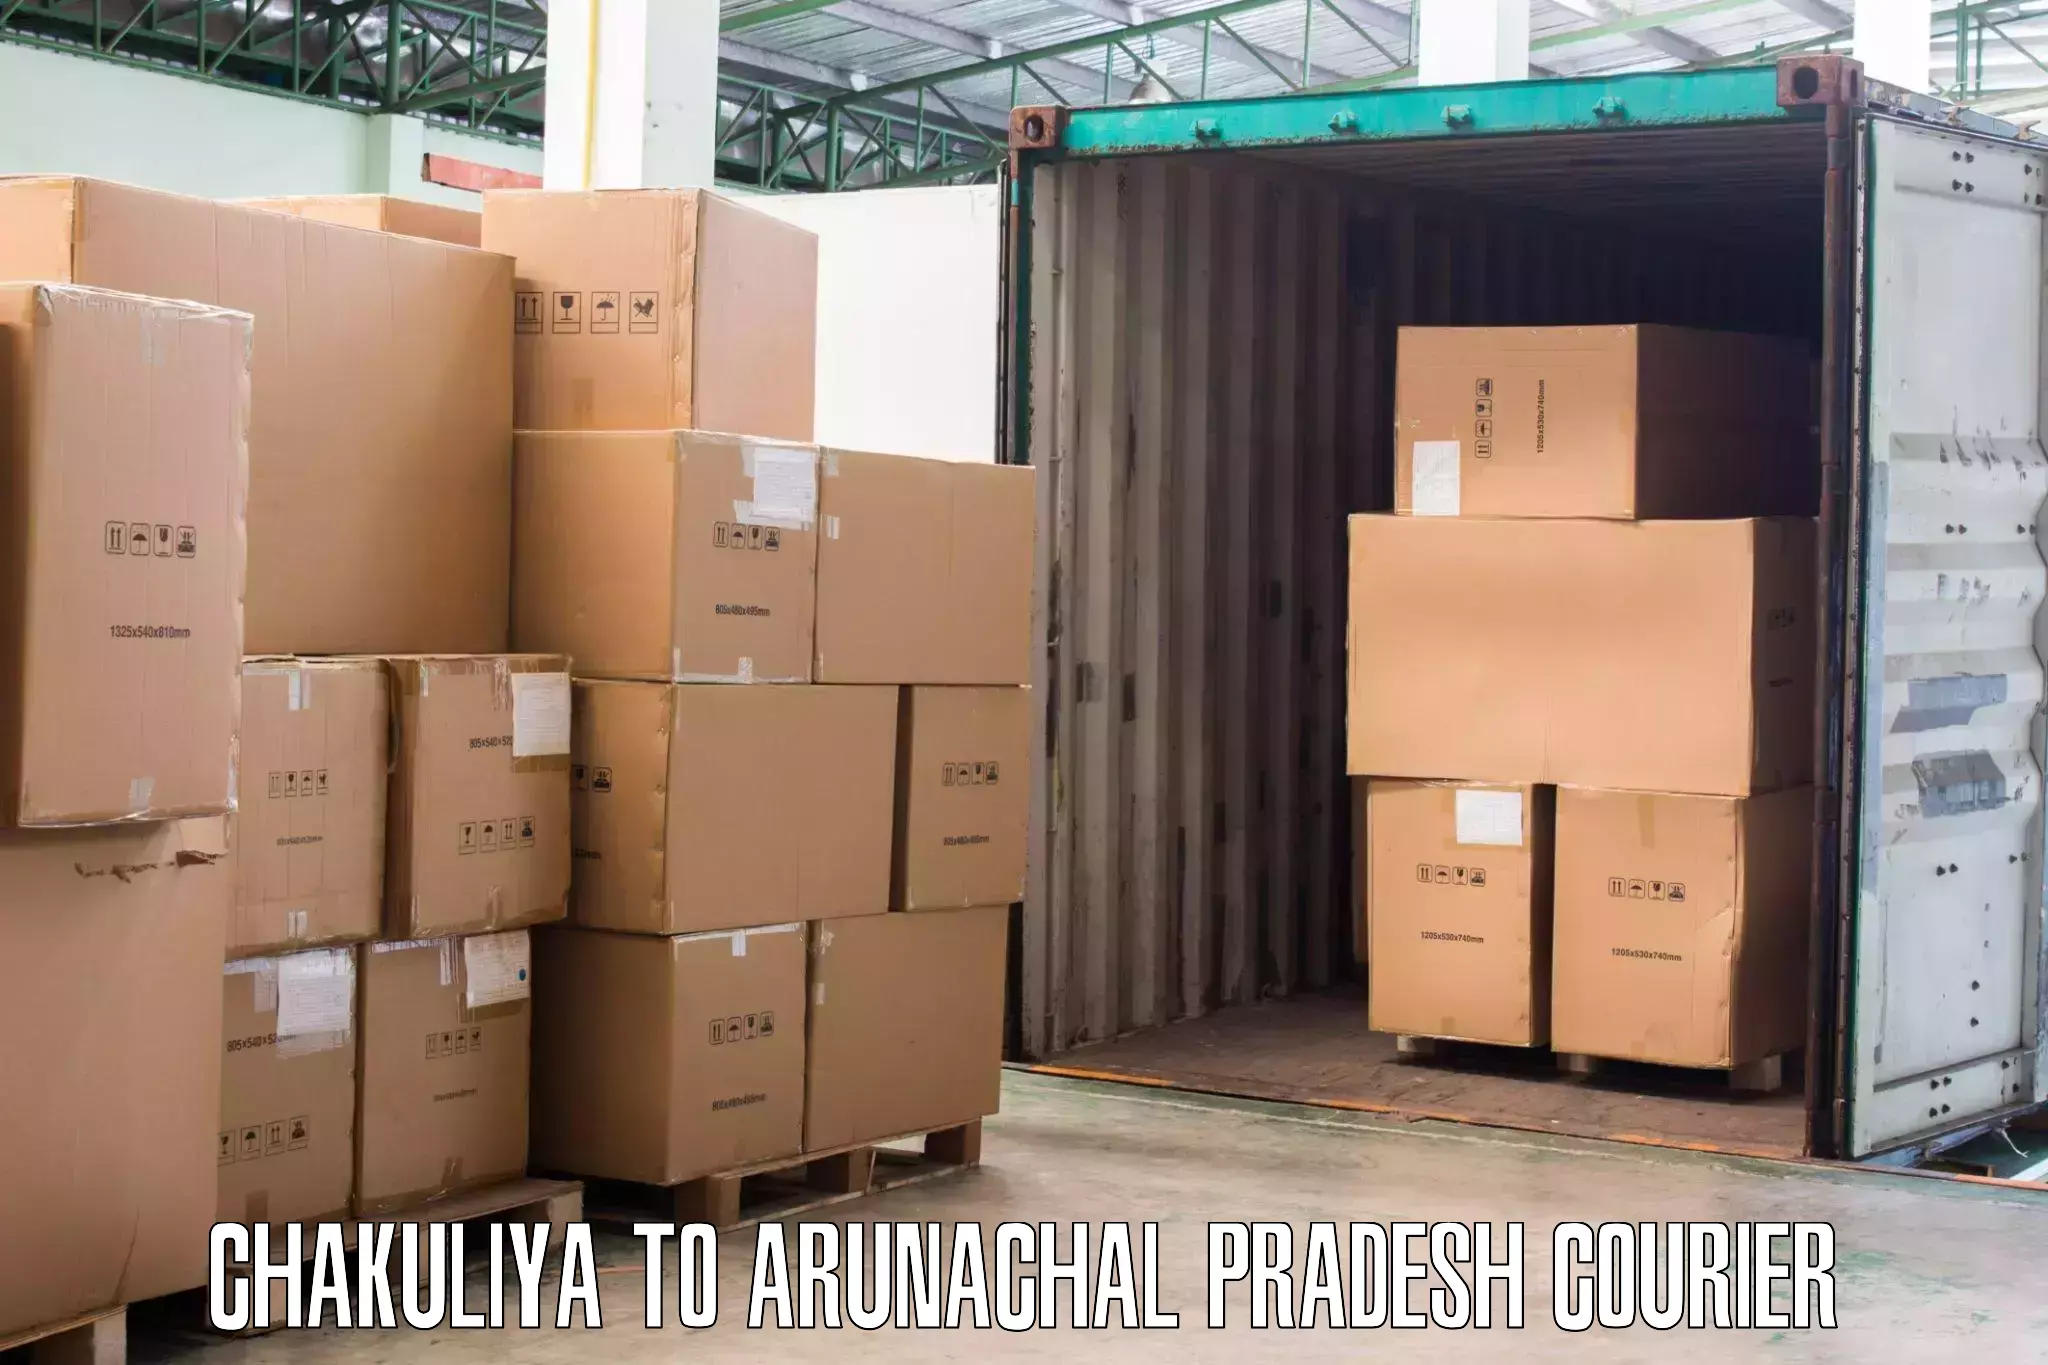 Furniture delivery service Chakuliya to Kharsang